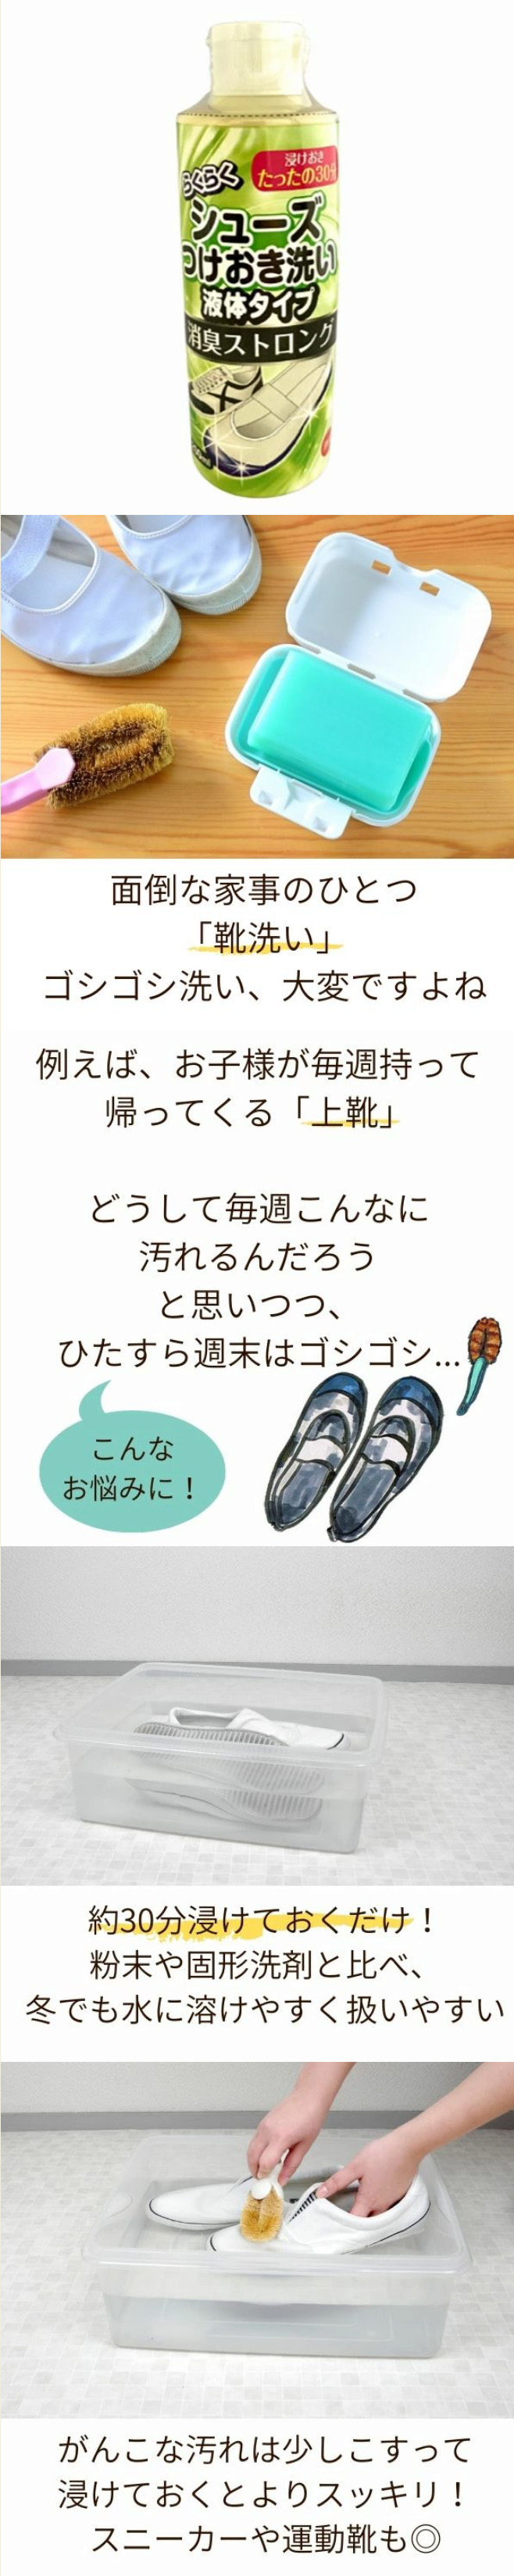 靴 洗う 洗剤 上靴 スニーカー つけおき洗い つけおき洗剤 消臭 日本製 木村石鹸 らくらくシューズのつけおき洗い消臭ストロング  :802305:アルファックス online shop 通販 